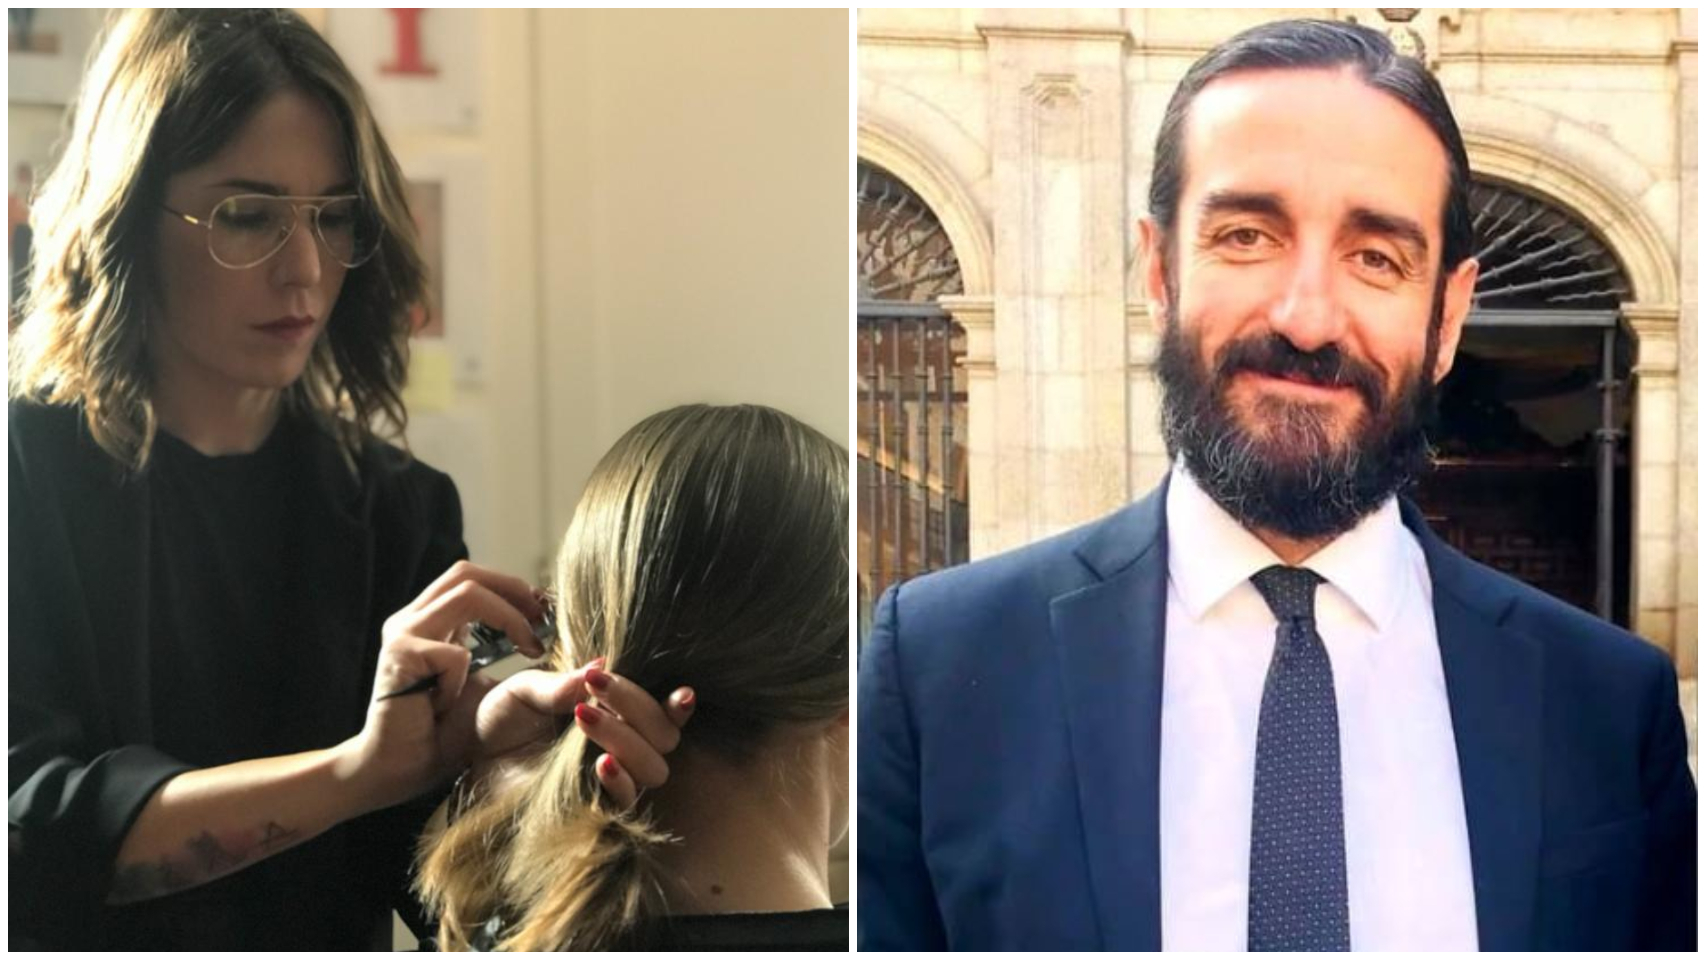 A la izquierda, Natalia, una peluquera de una gran cadena de peluquerías. A la derecha, Alejandro Fernández, presidente de Marco Aldany.